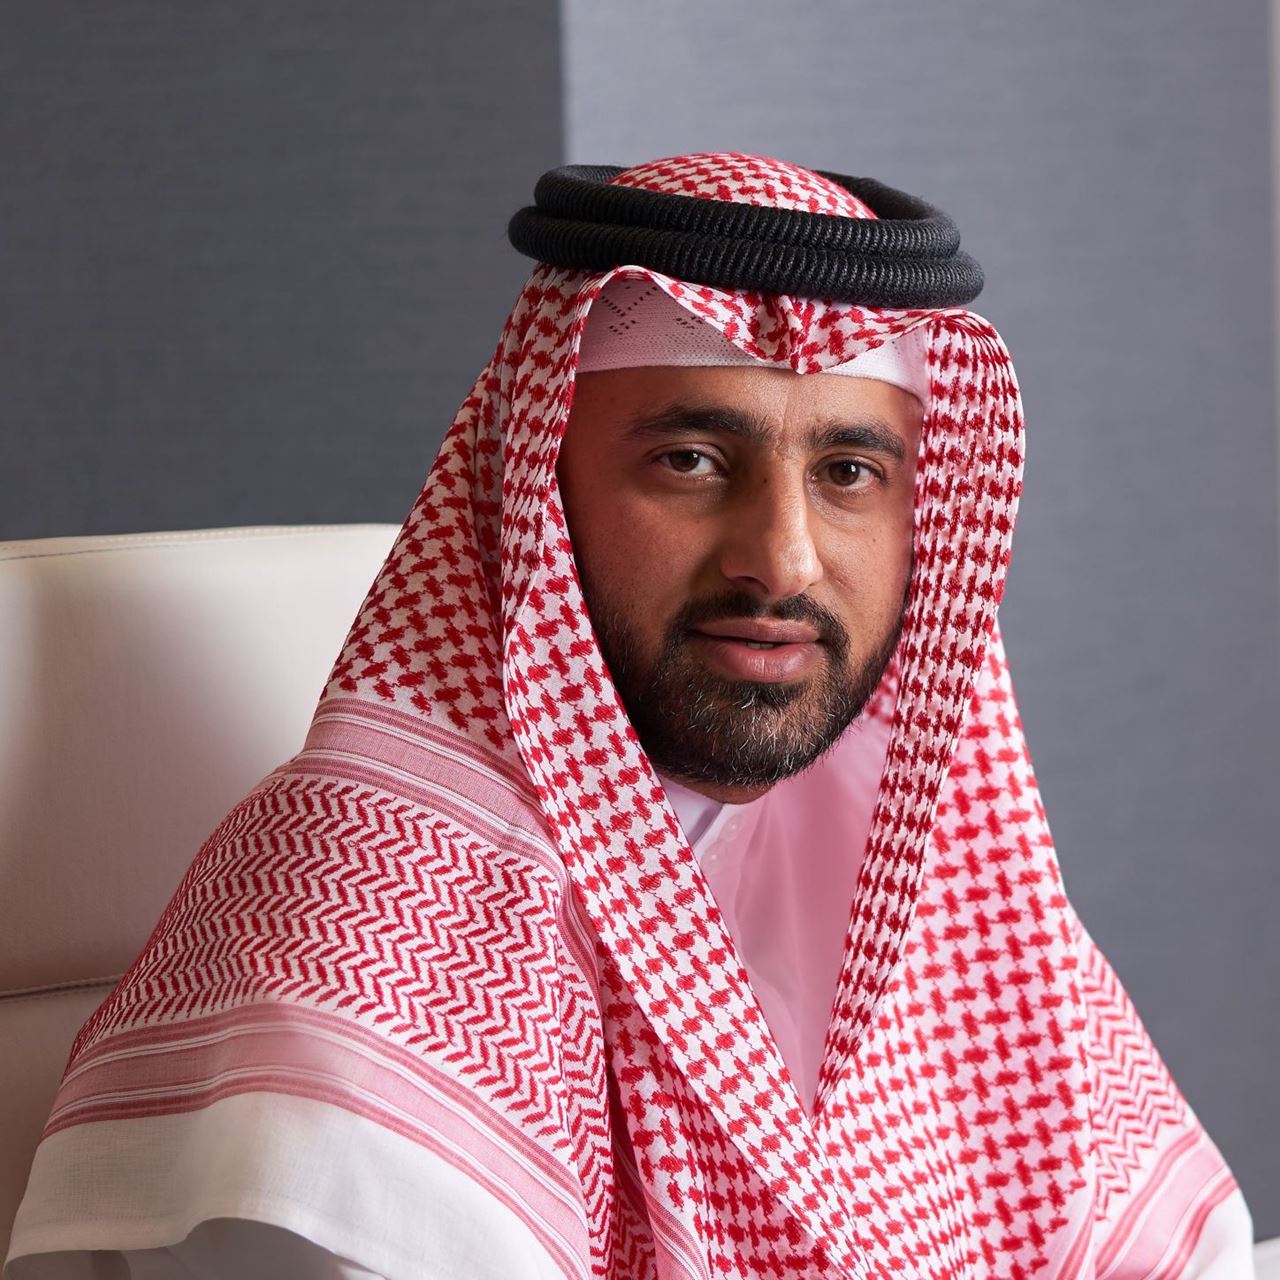 المهندس محمدعبدالغفار الكوهجي، الرئيس التنفيذي لشركة الكوهجي للتطوير العقاري